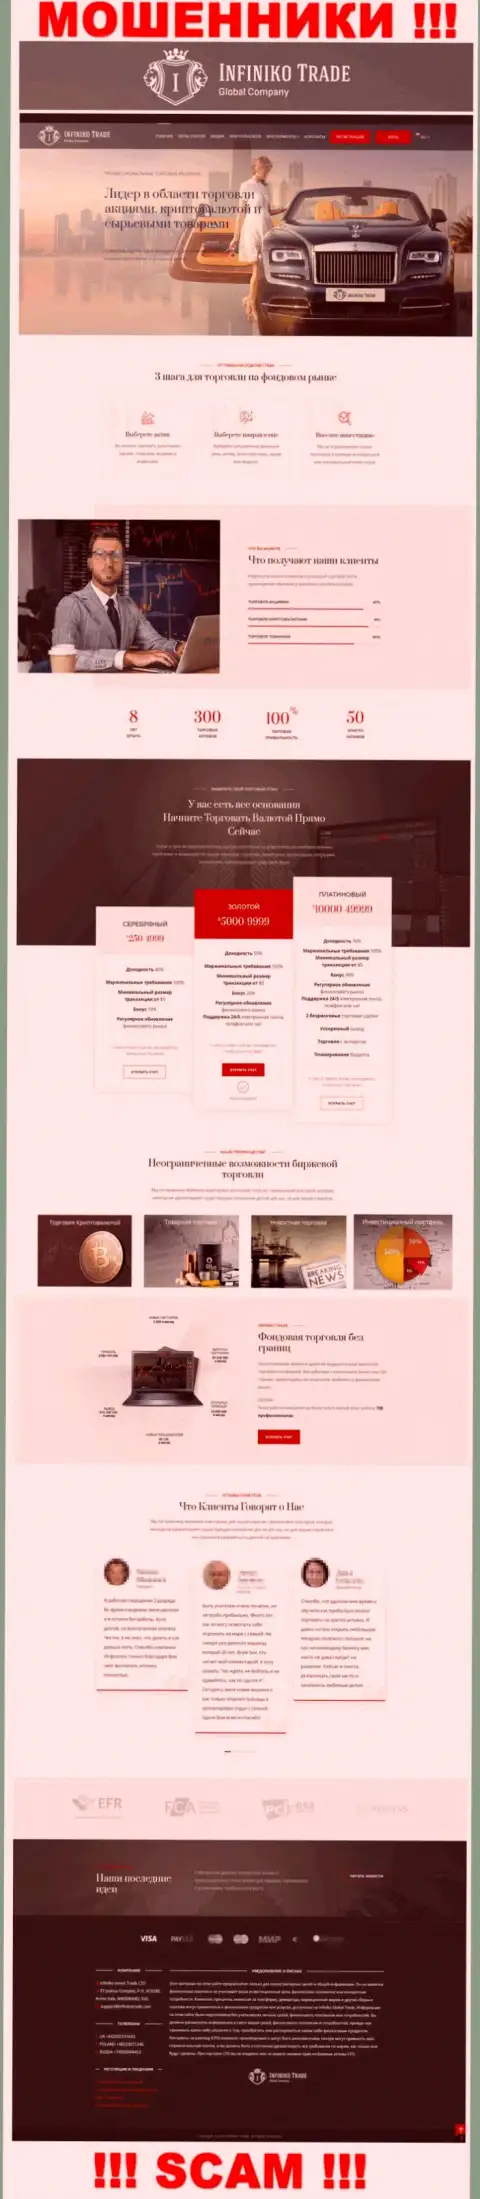 Официальная веб страница мошеннического проекта Инфинико Инвест Трейд ЛТД